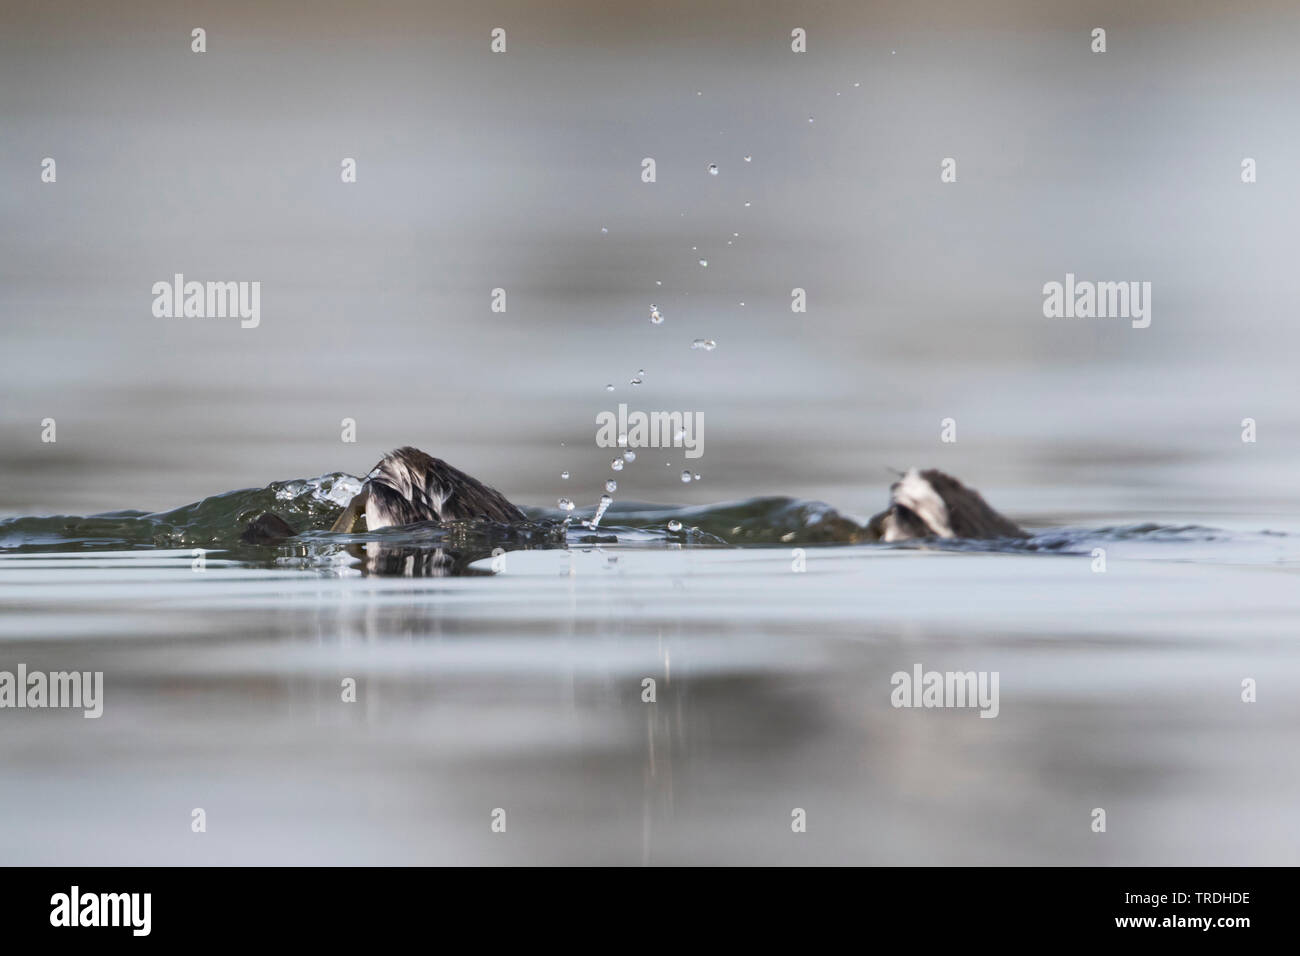 Grèbe à cou noir (Podiceps nigricollis), adultes en plumage d'hiver sur l'eau, submerge, Allemagne Banque D'Images